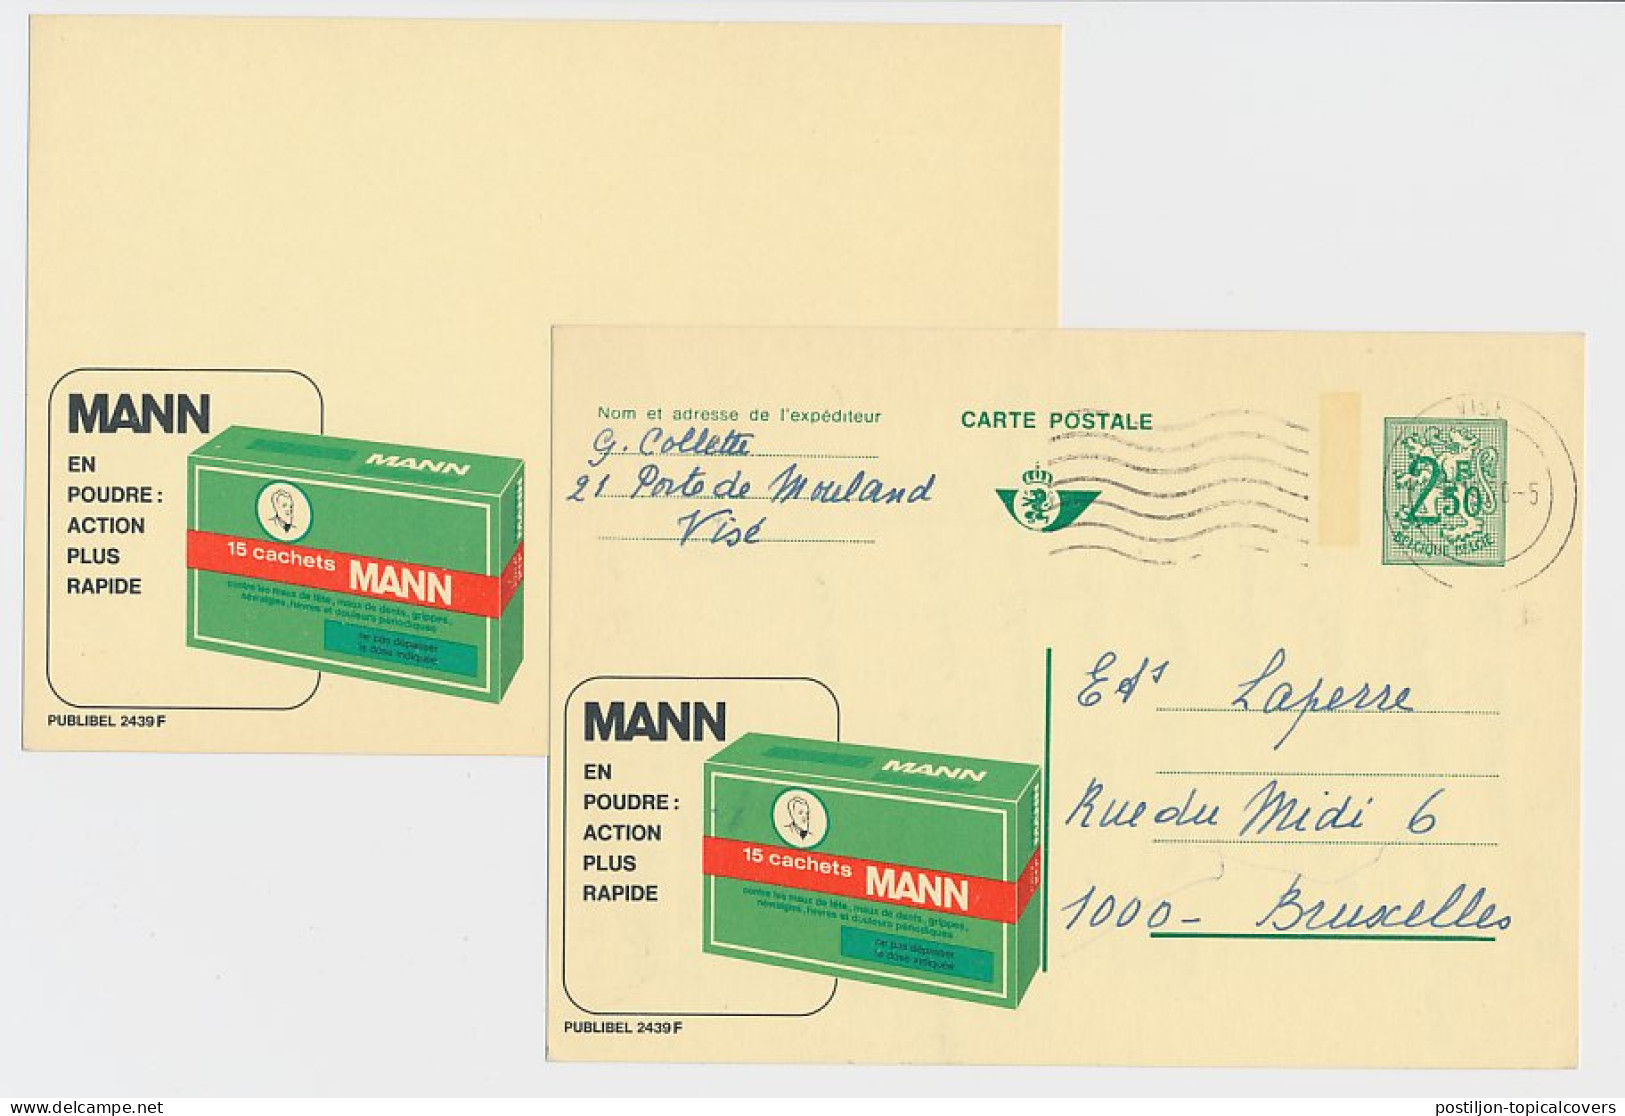 Essay / Proof Publibel Card Belgium 1970 - Publubel 2439 Medicine - Powder - Farmacia